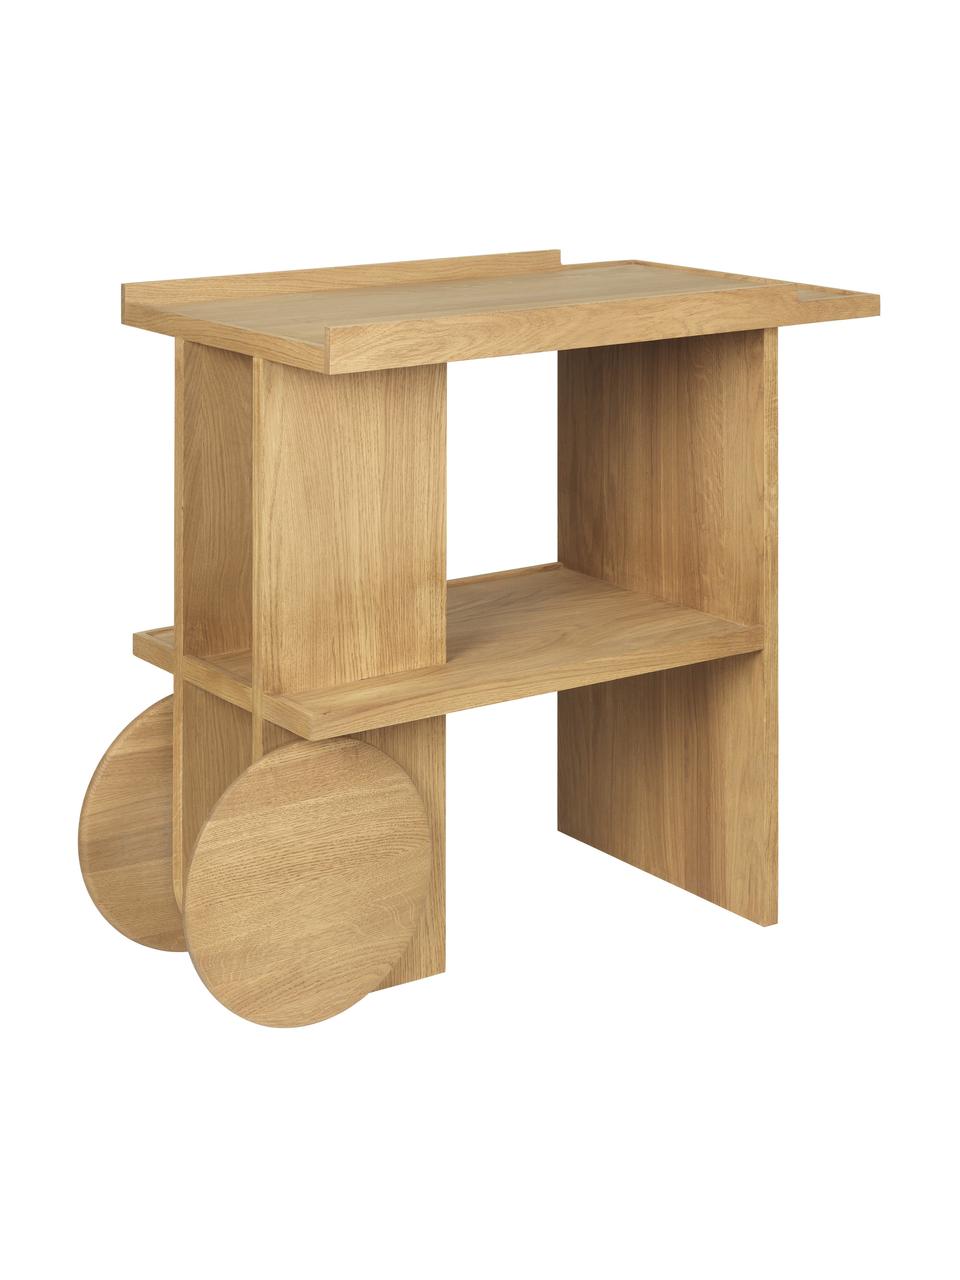 Pomocný stolík z dubového dreva Axis, Dubové drevo, ošetrené olejom, s FSC certifikátom, Dubové drevo, Š 80 x V 70 cm